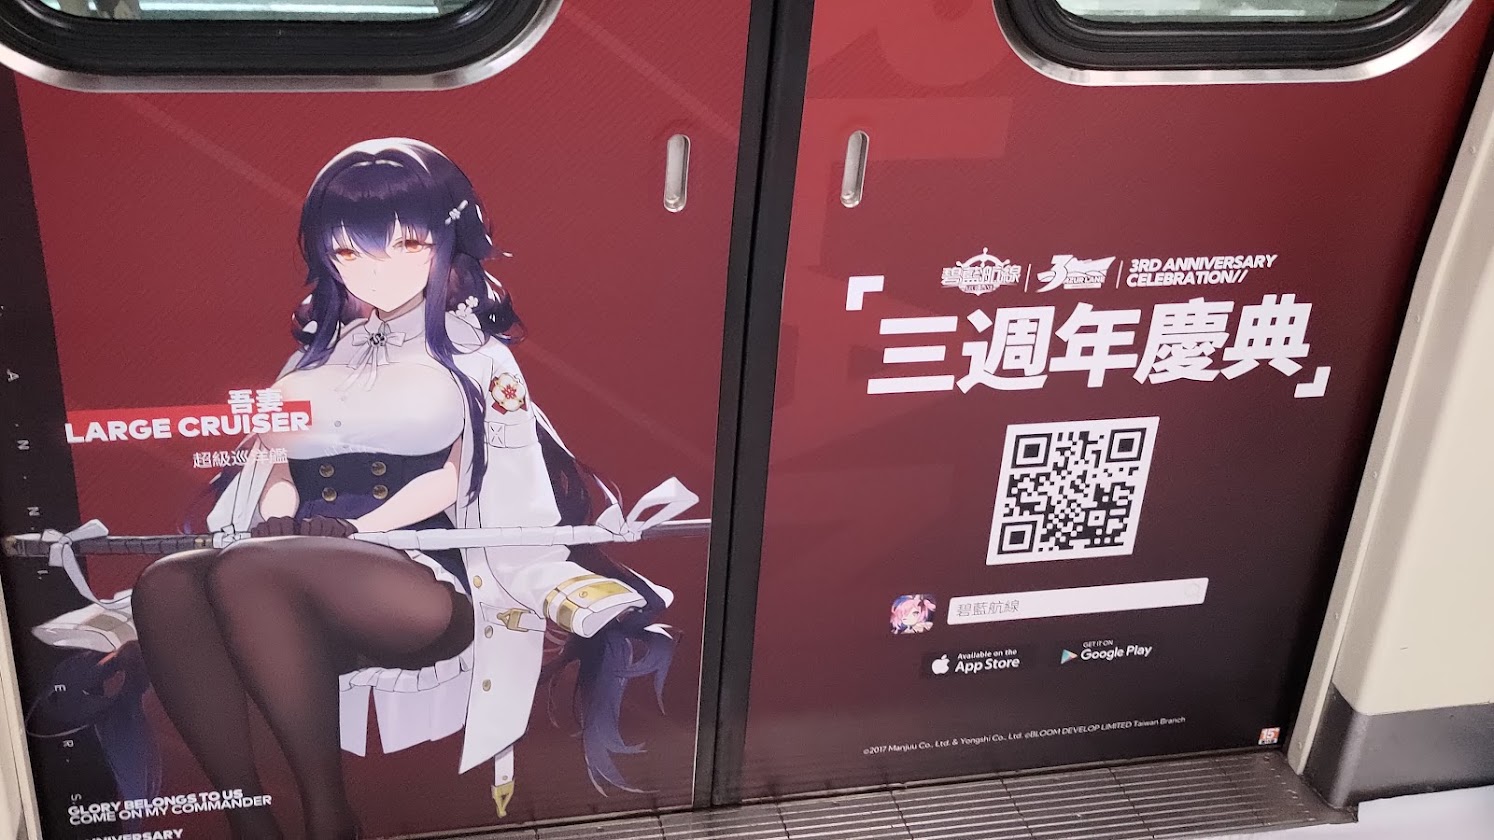 圖https://upload.cc/i1/2022/10/09/R3D0vS.jpg, 搭乘台北捷運彩繪列車